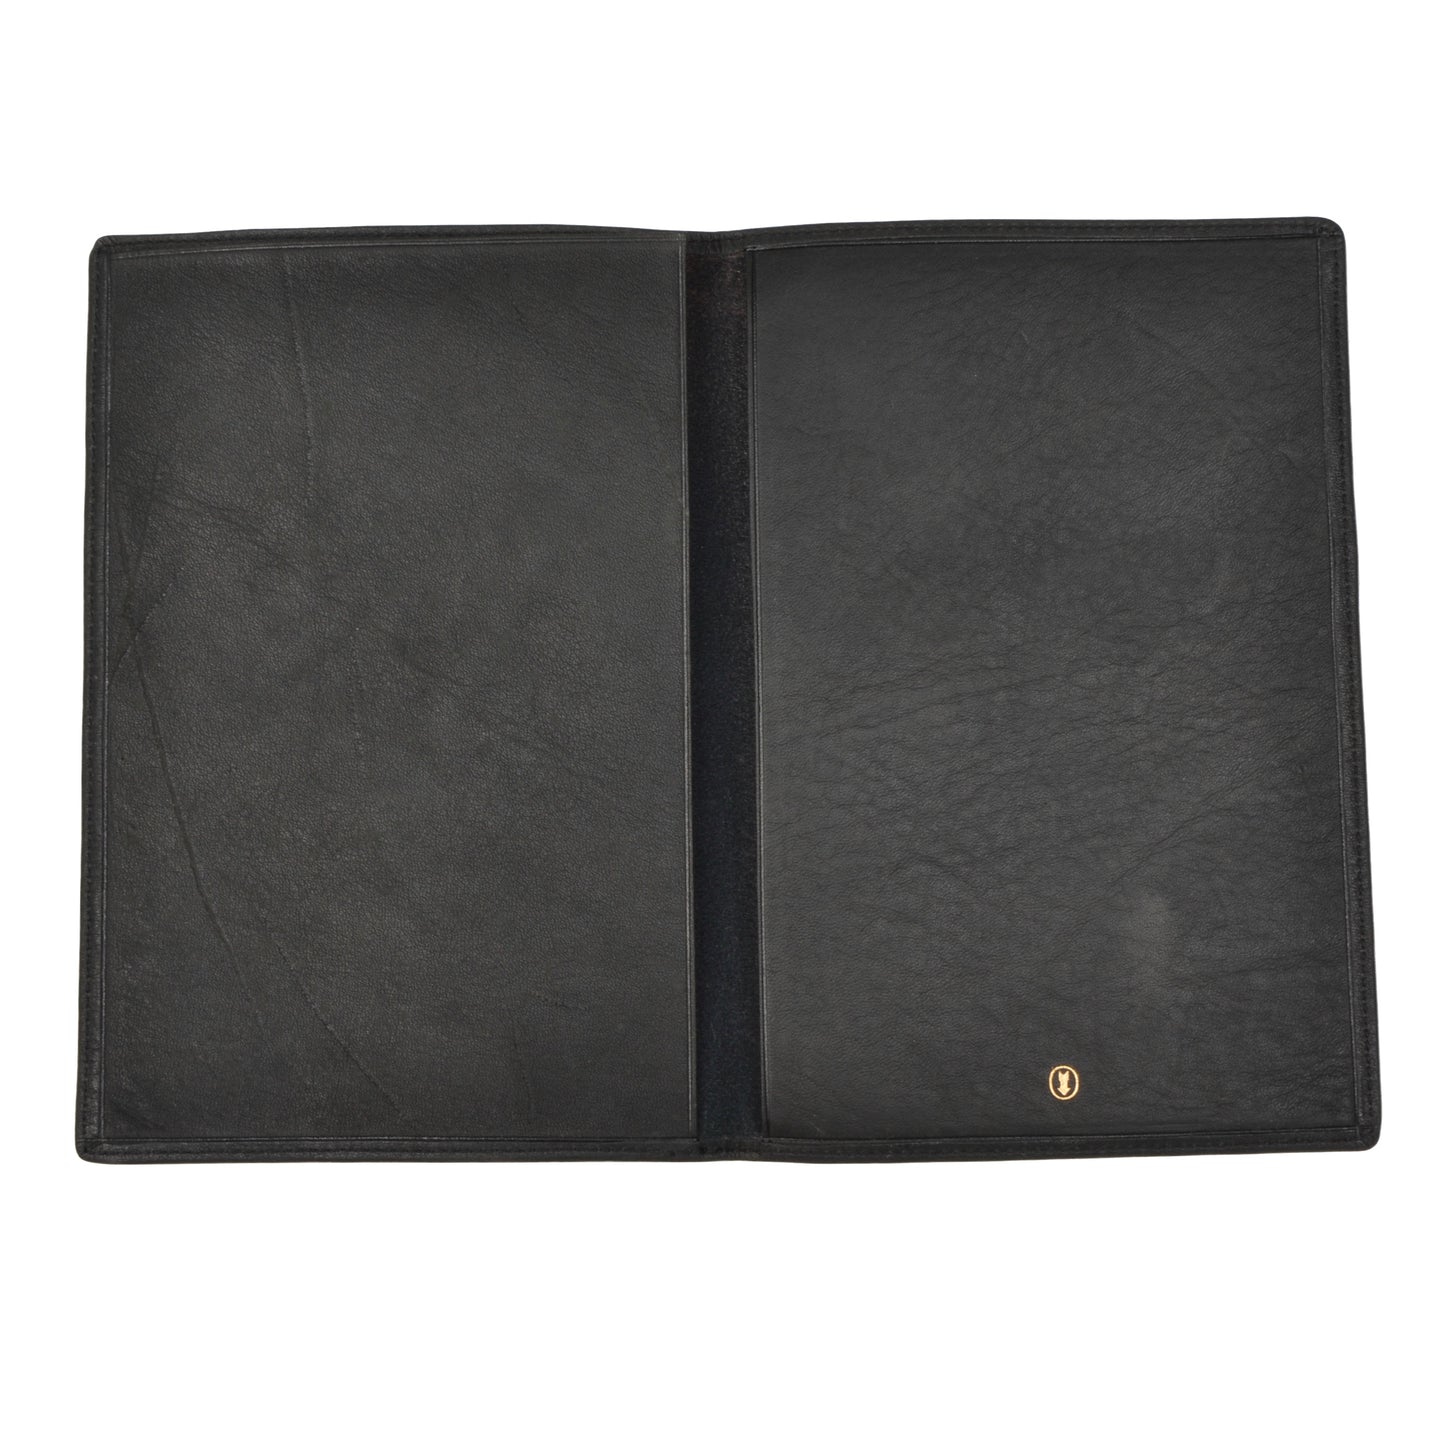 Goldpfeil Travel Wallet/Passport Case - Black